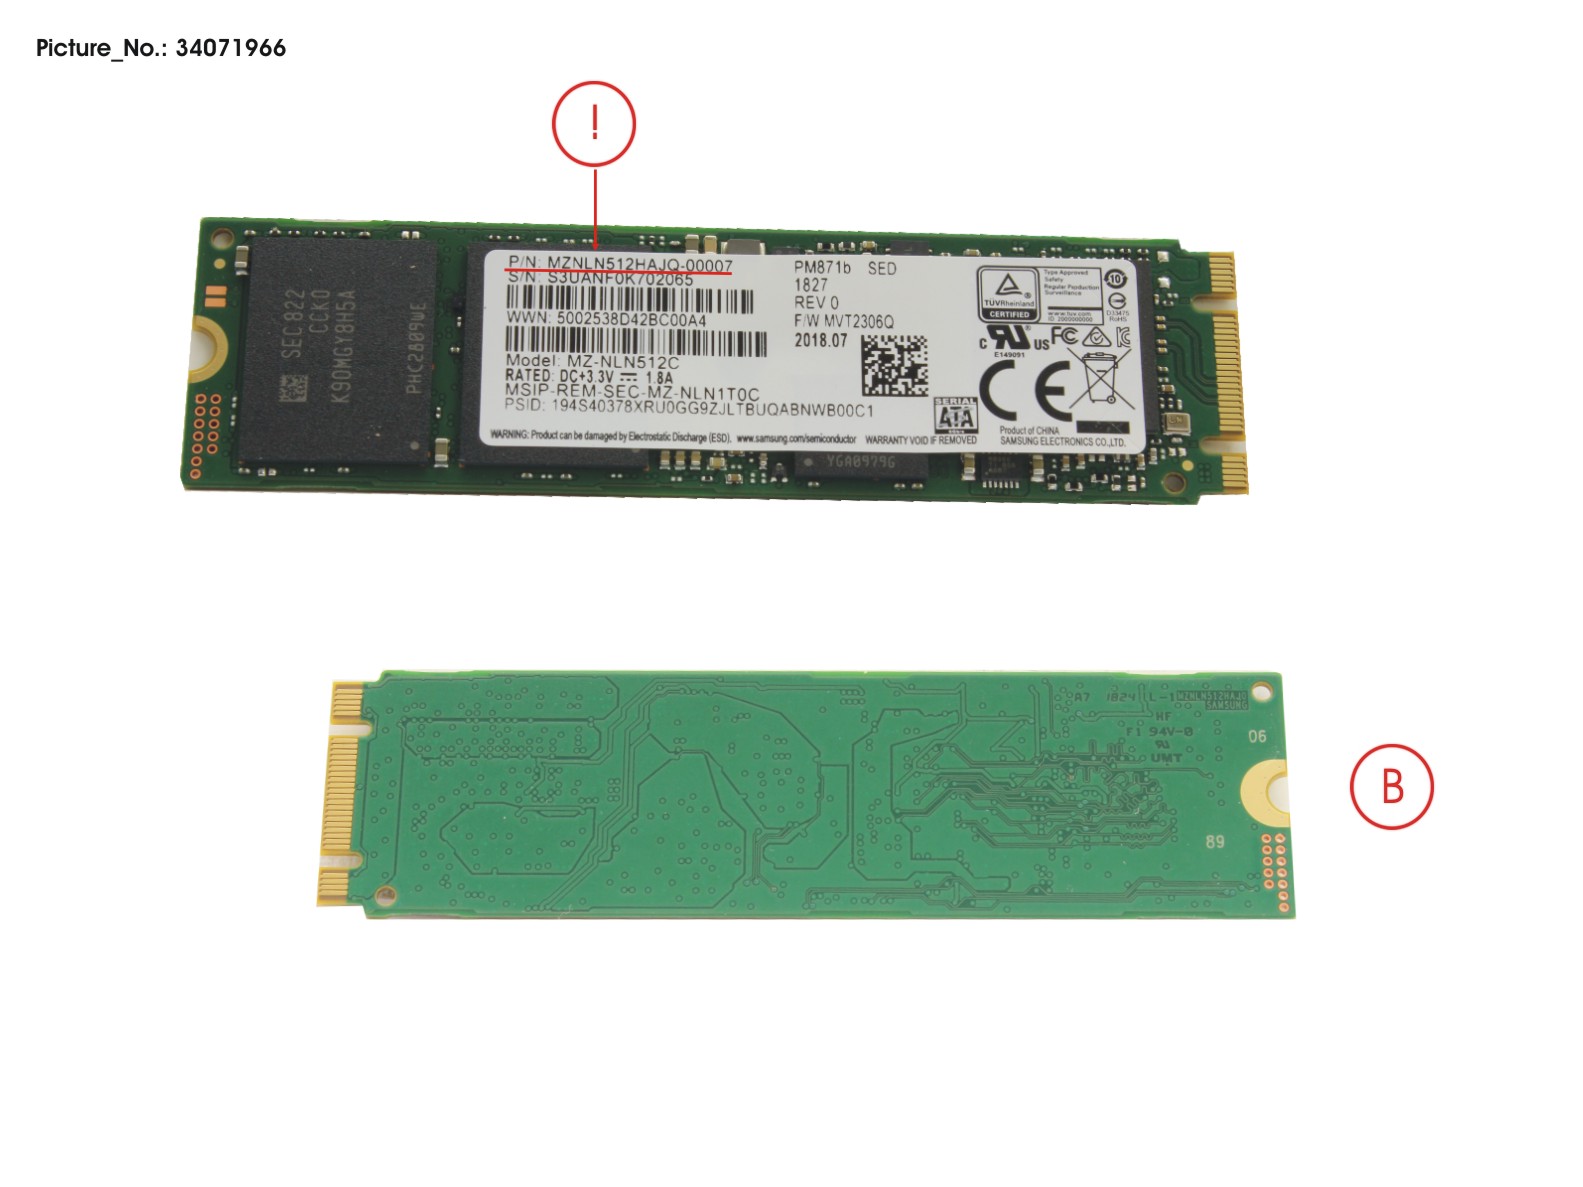 FUJITSU SSD S3 M.2 2280 PM871B 512GB(OPAL)